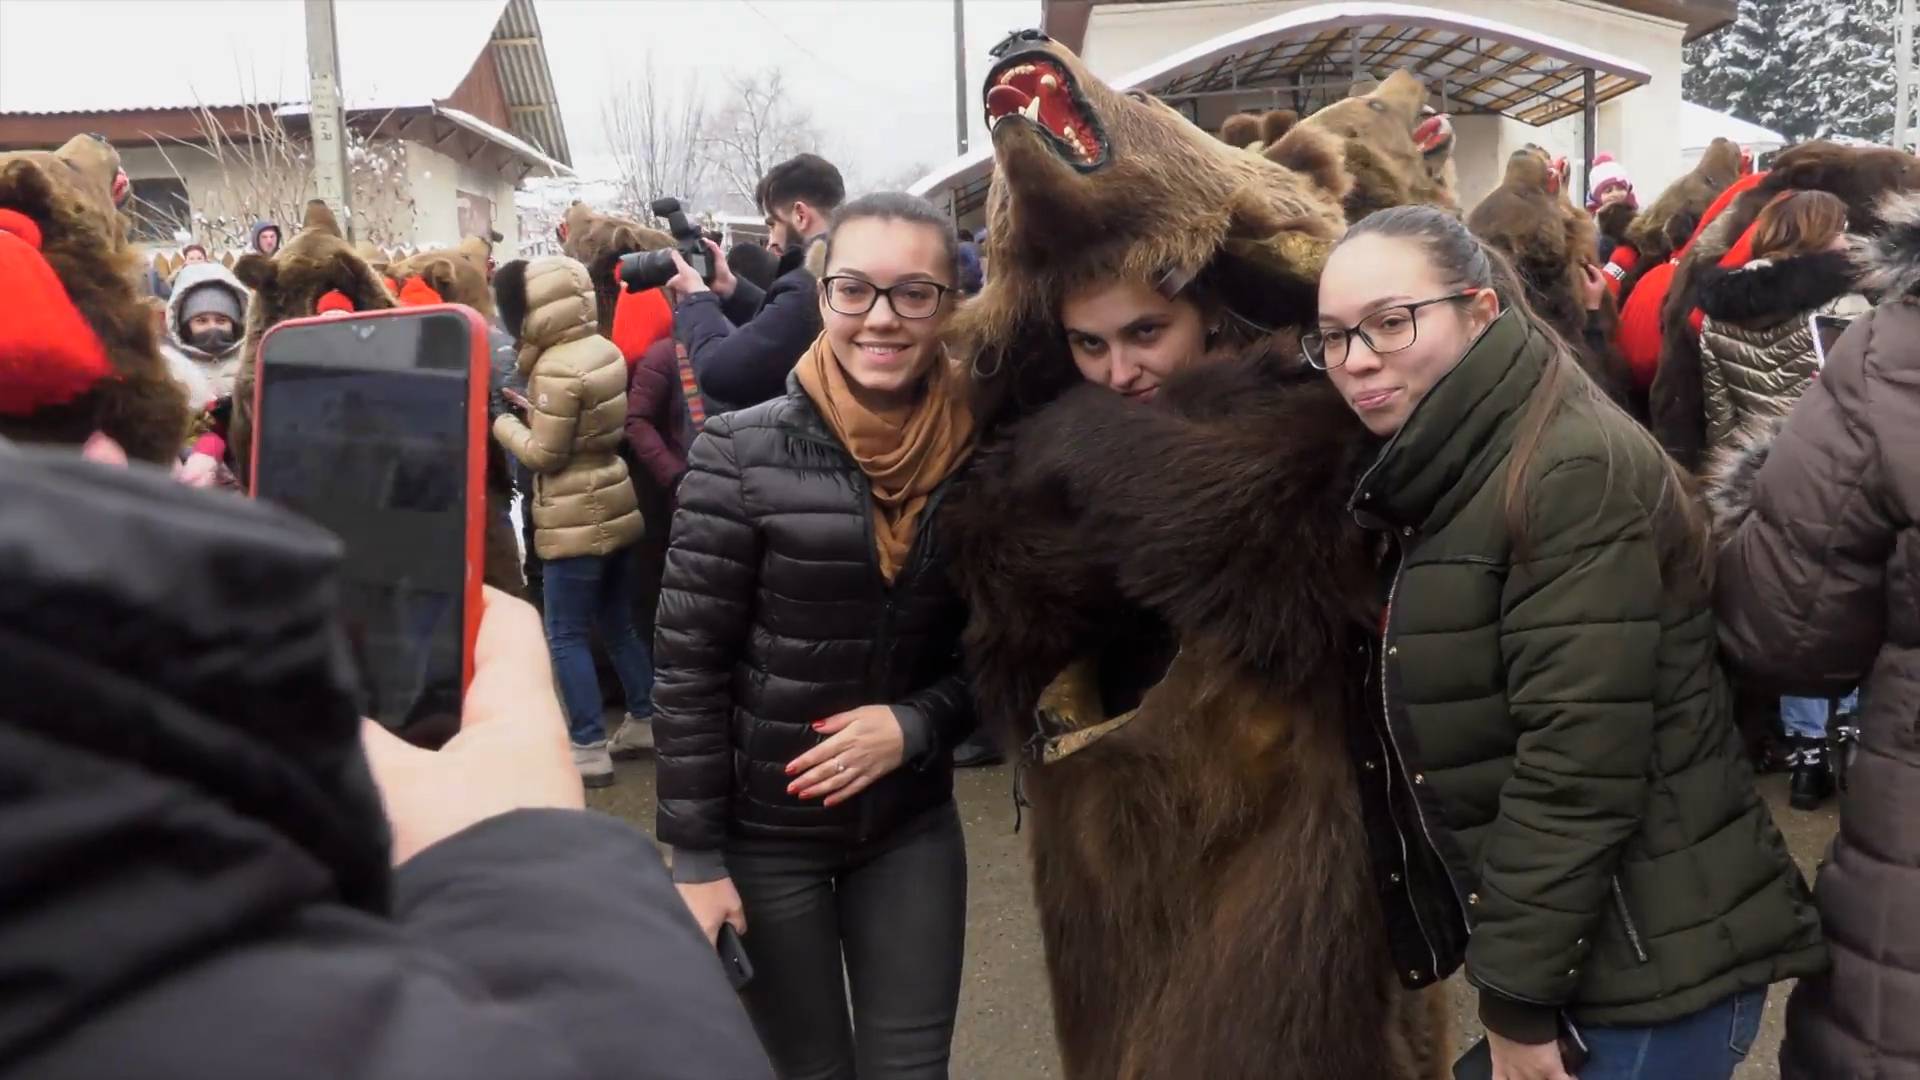 Облаченные в шкуры медведей люди приняли участие в традиционном румынском фестивале Видео